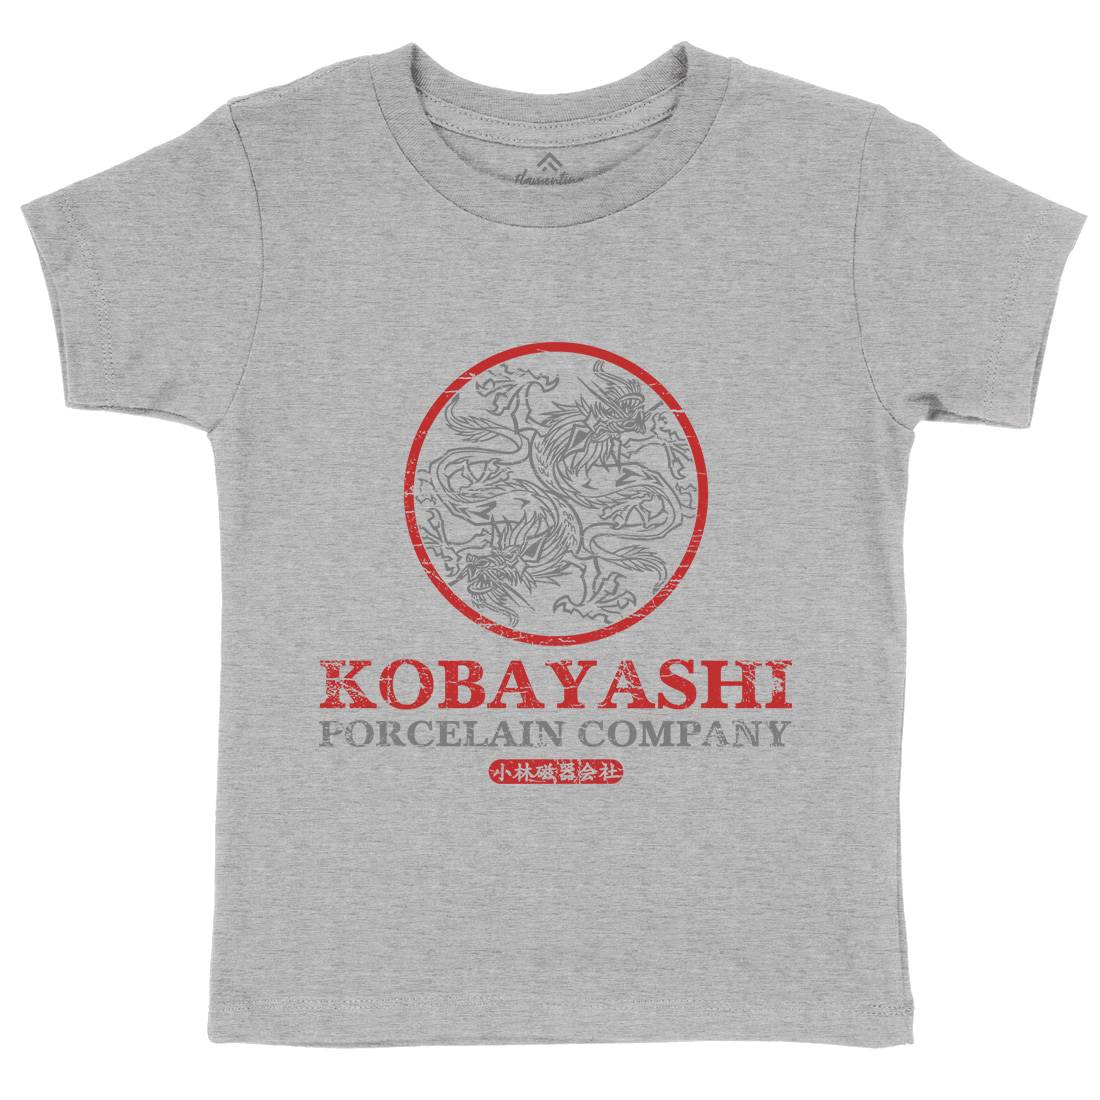 Kobayashi Porcelain Kids Crew Neck T-Shirt Asian D417